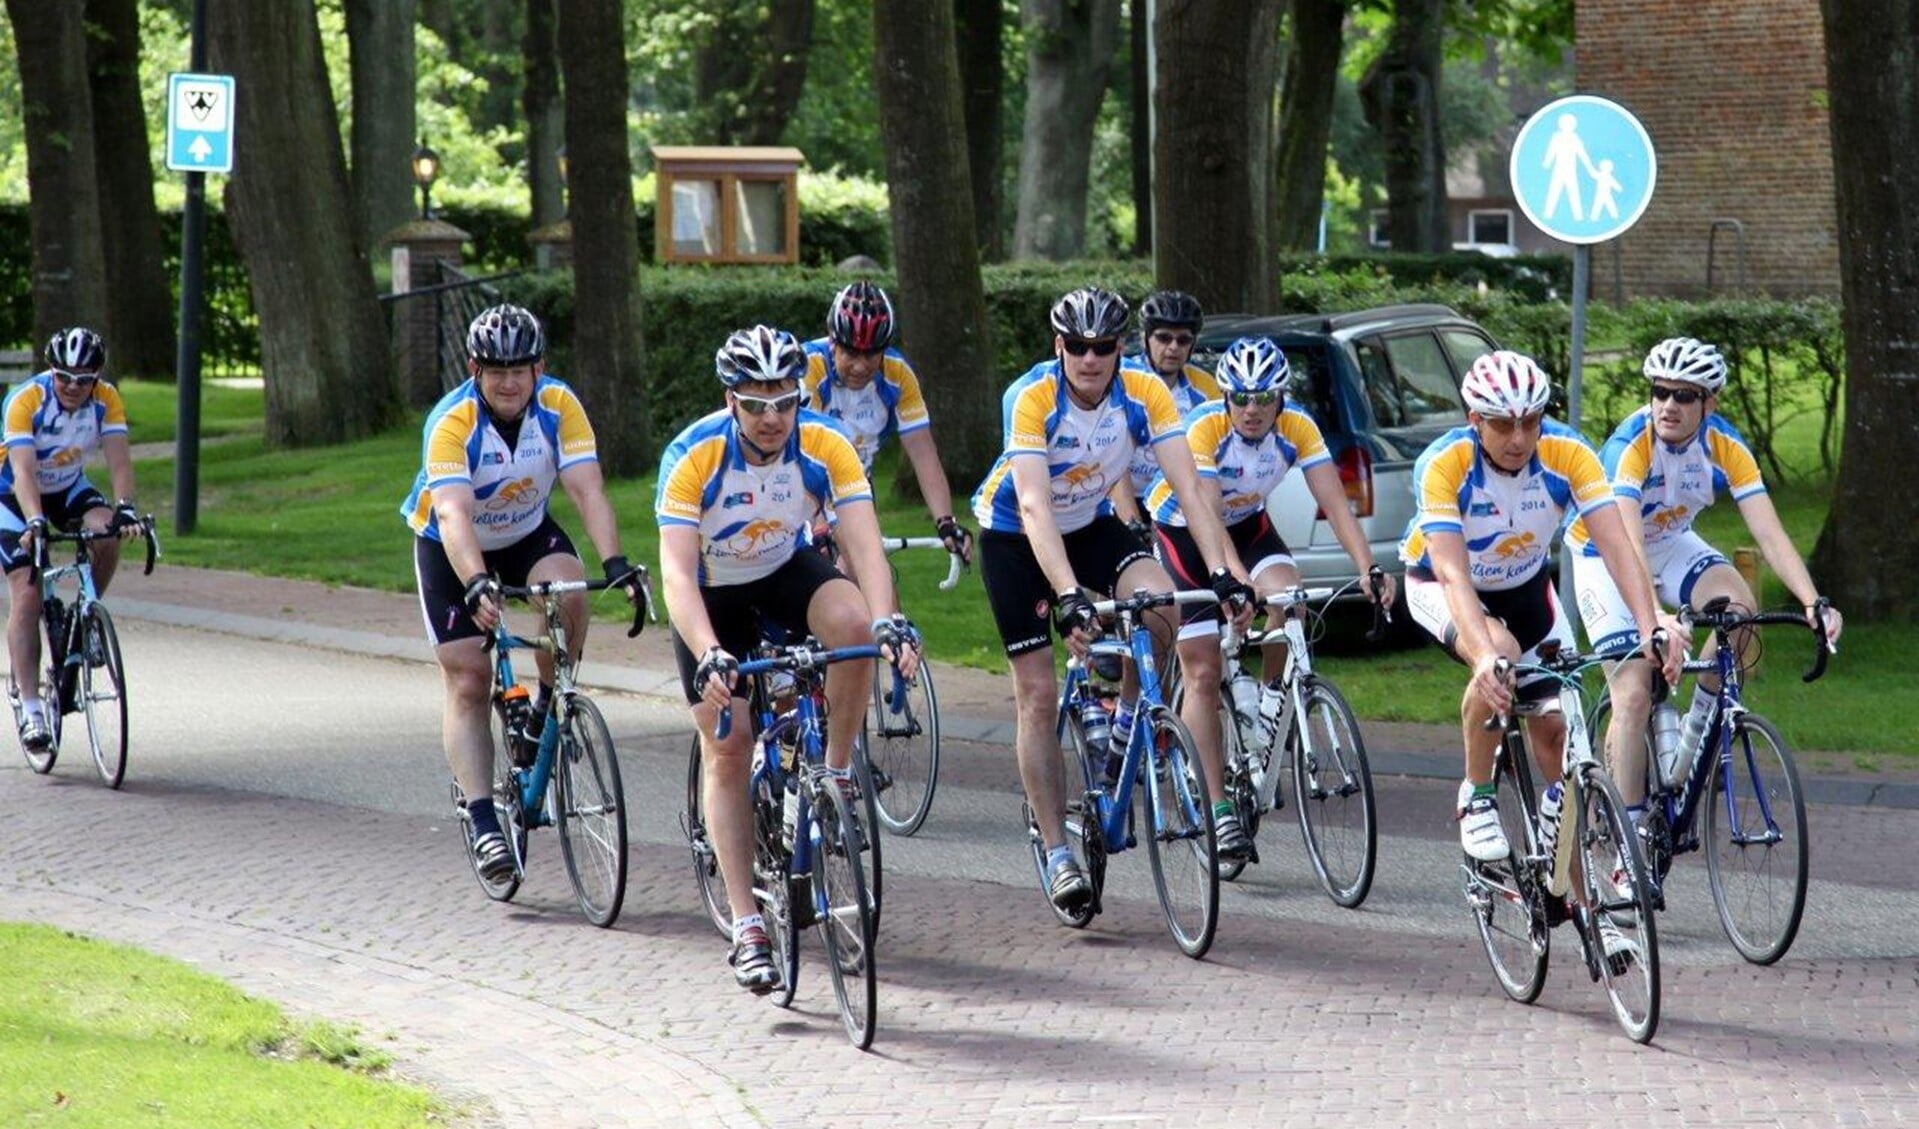  Fietsen tegen kanker wordt jaarlijks georganiseerd door een Voorburgse vriendenclub (foto: Lamers Fotografie).